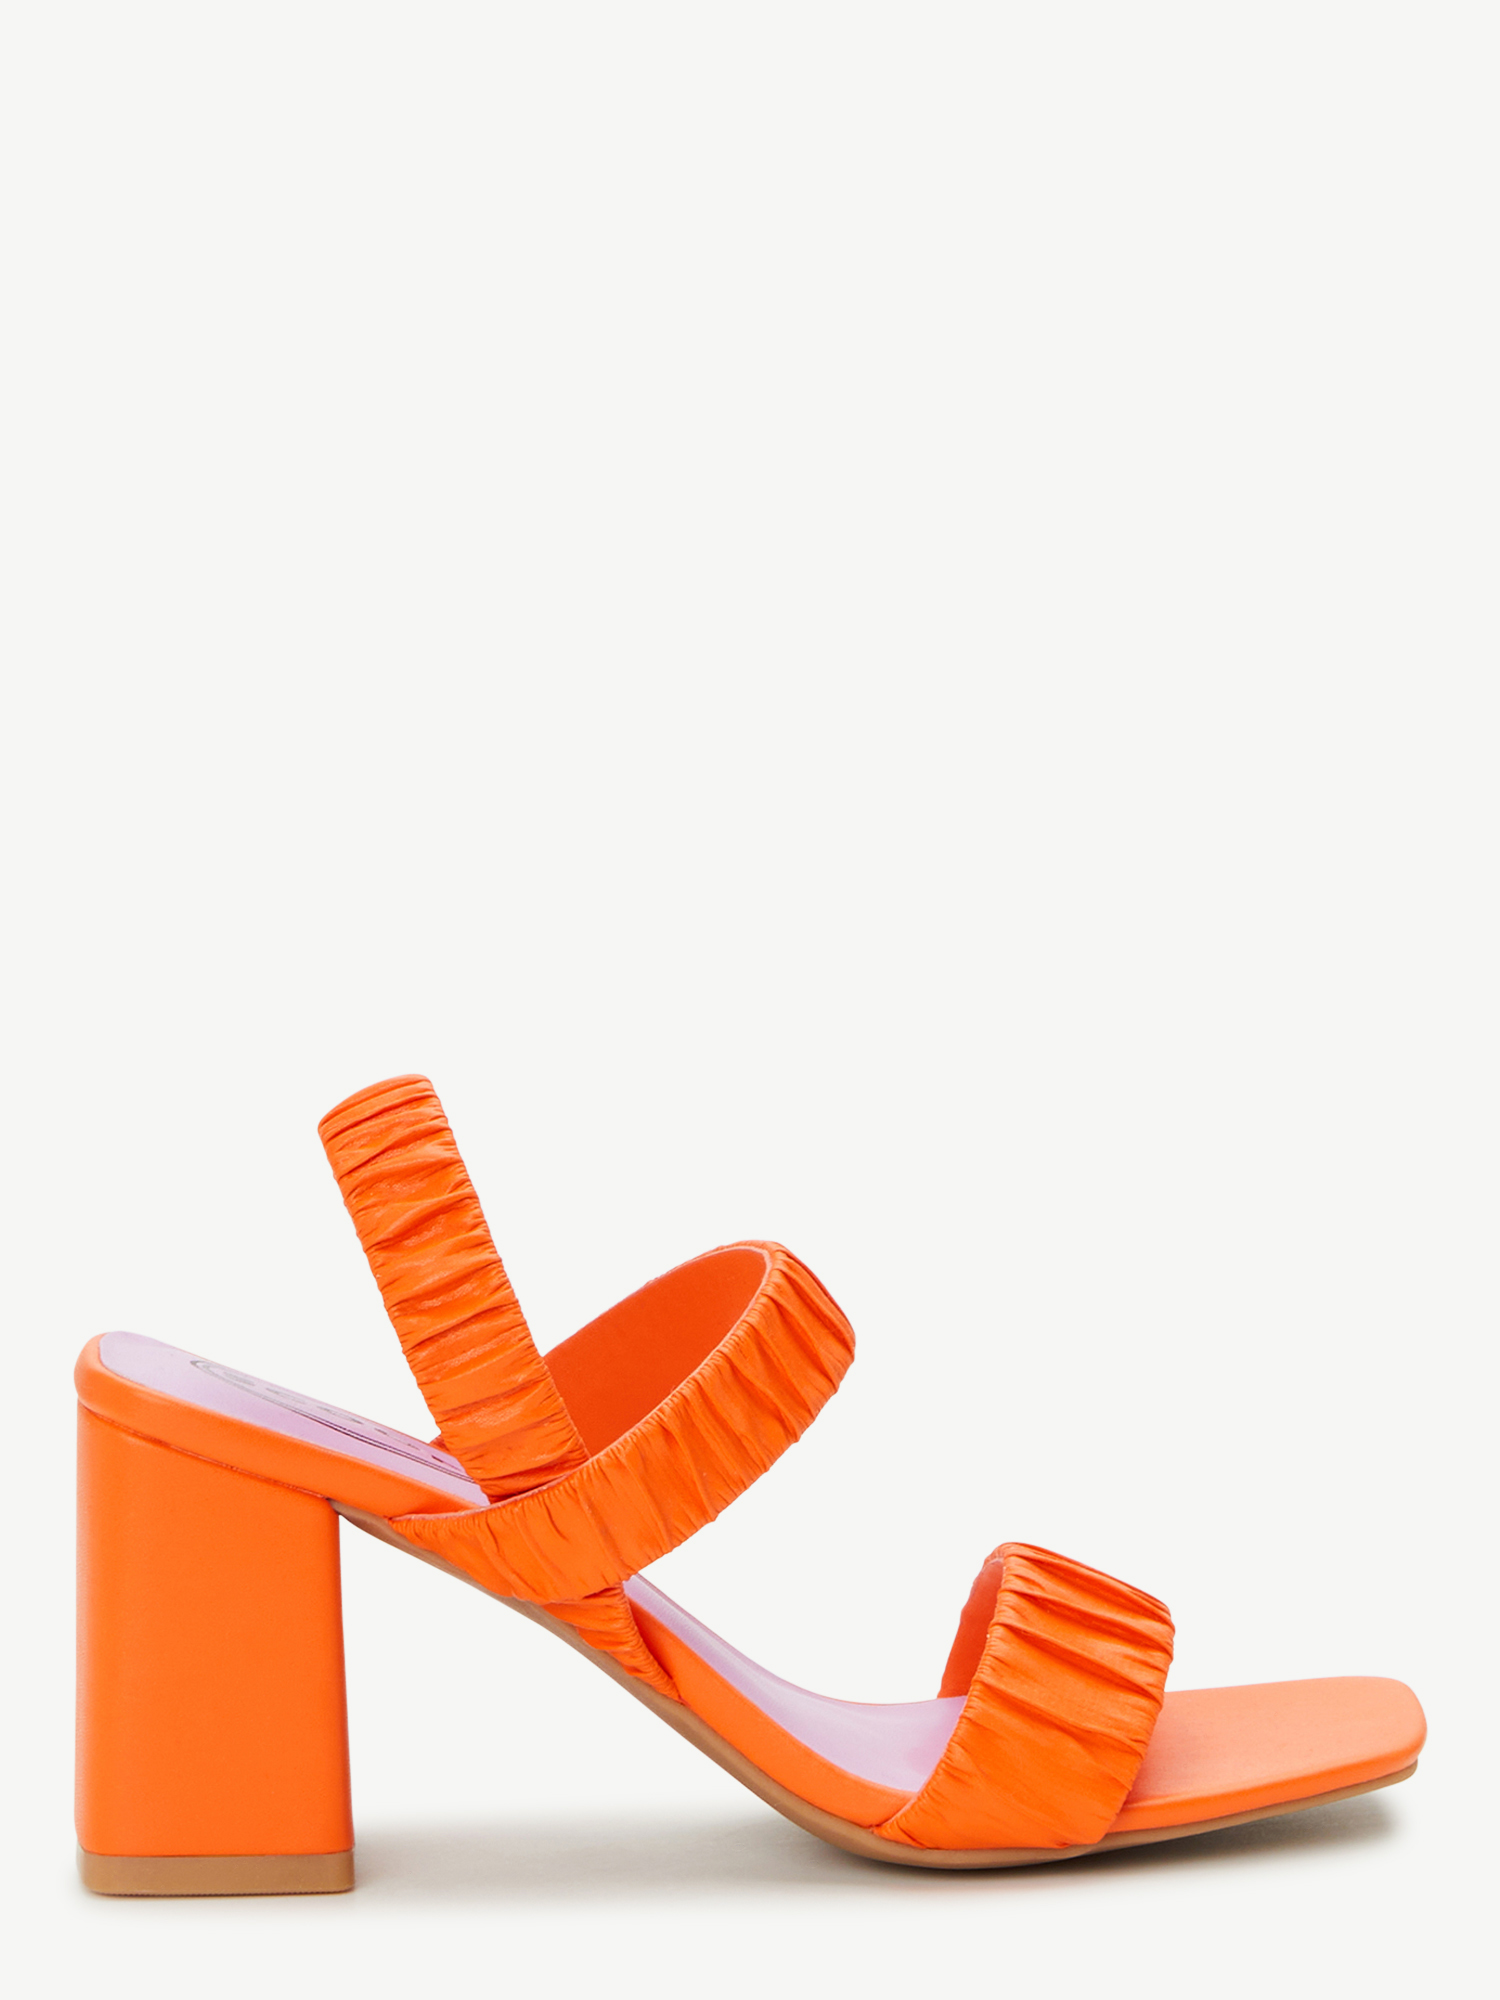 Scoop Women’s Block Heel Sandals - image 2 of 6